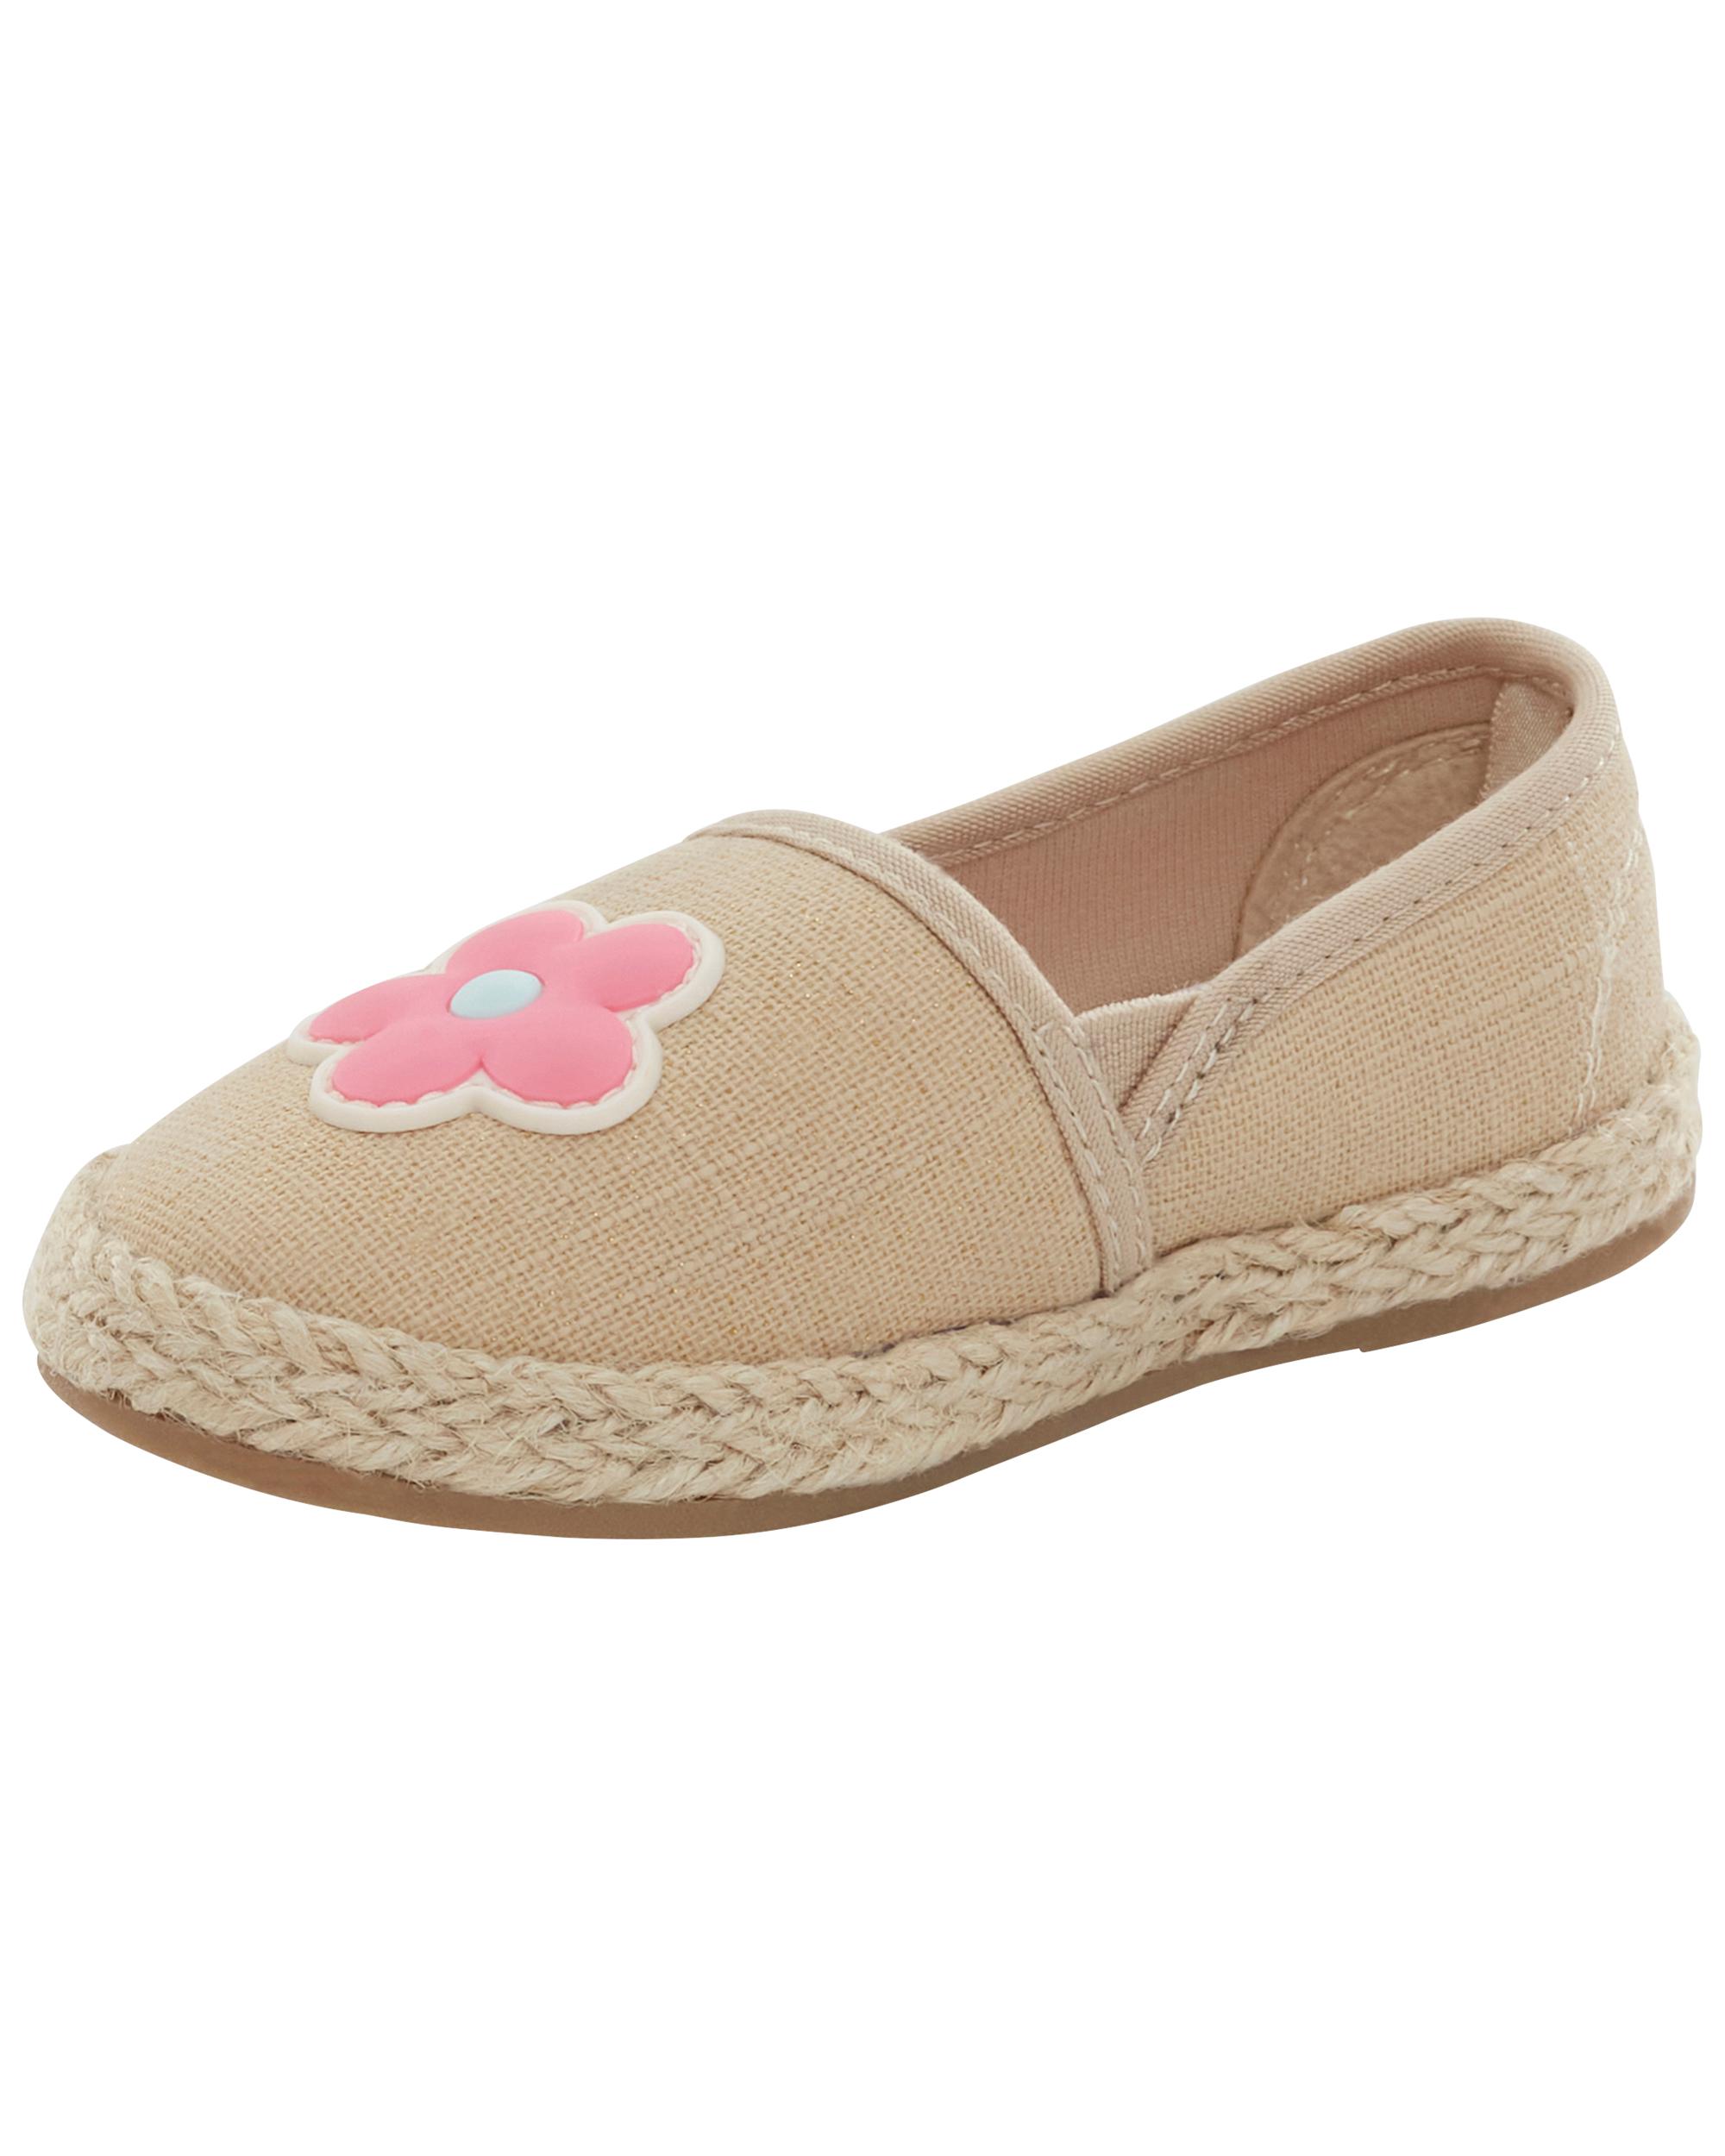 Toddler Floral Slip-On Shoes